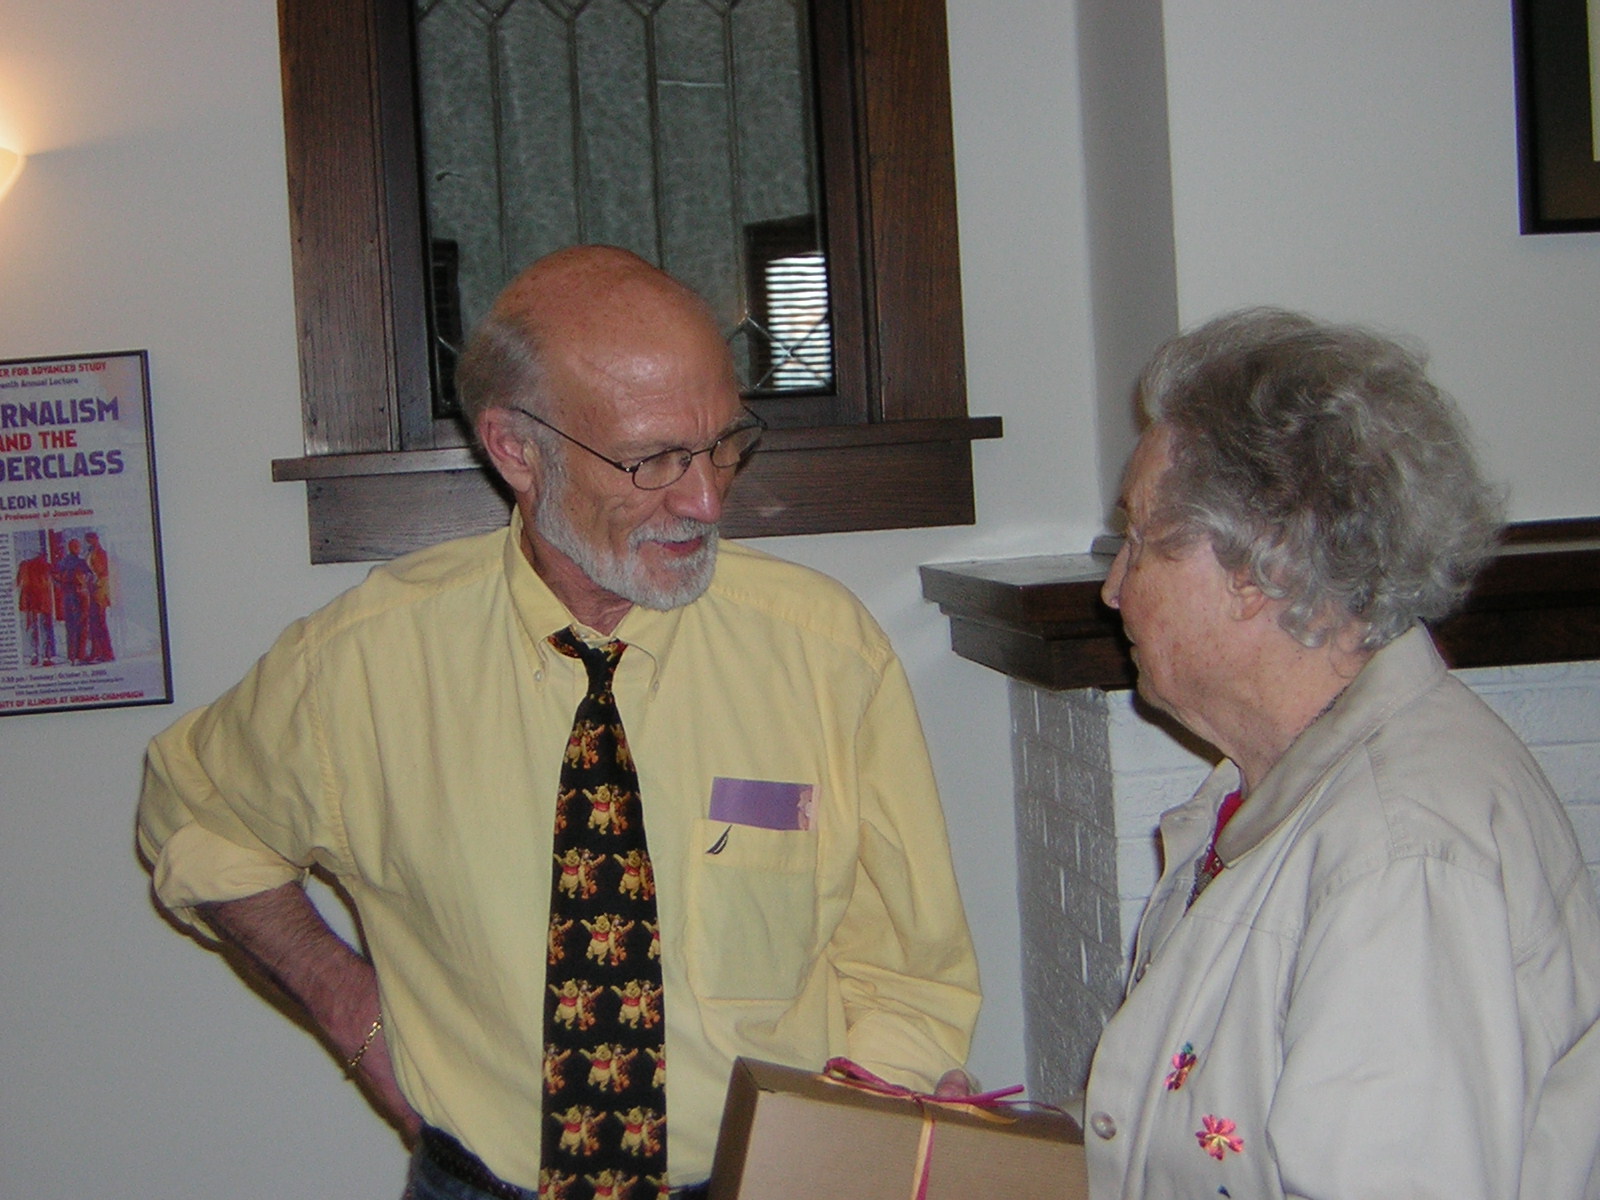 Professor Stanley Hauerwas and Marjorie Hall Thulin